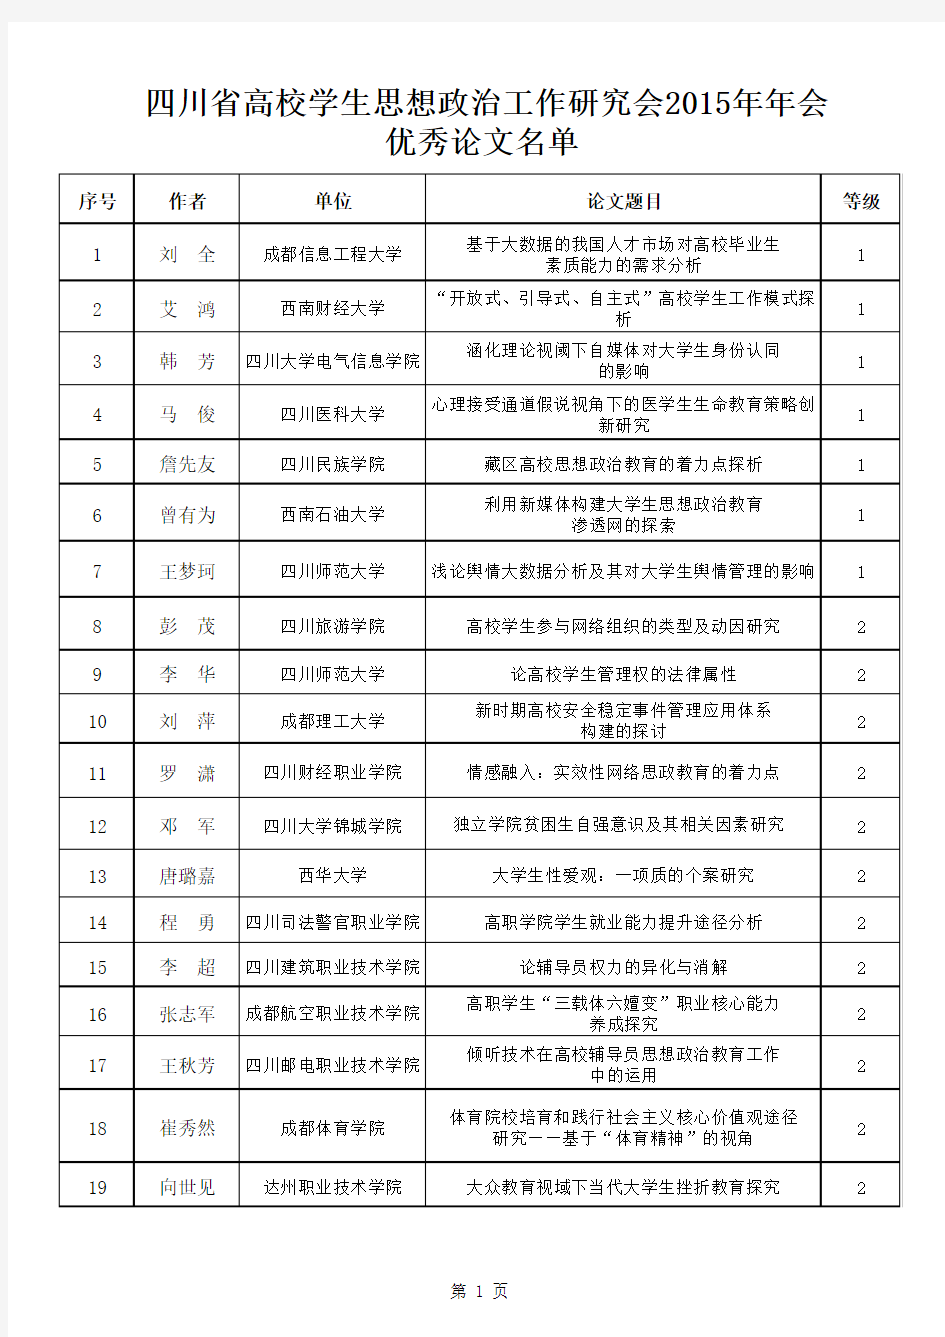 四川省高校学生思想政治工作研究会2015年年会优秀论文名单